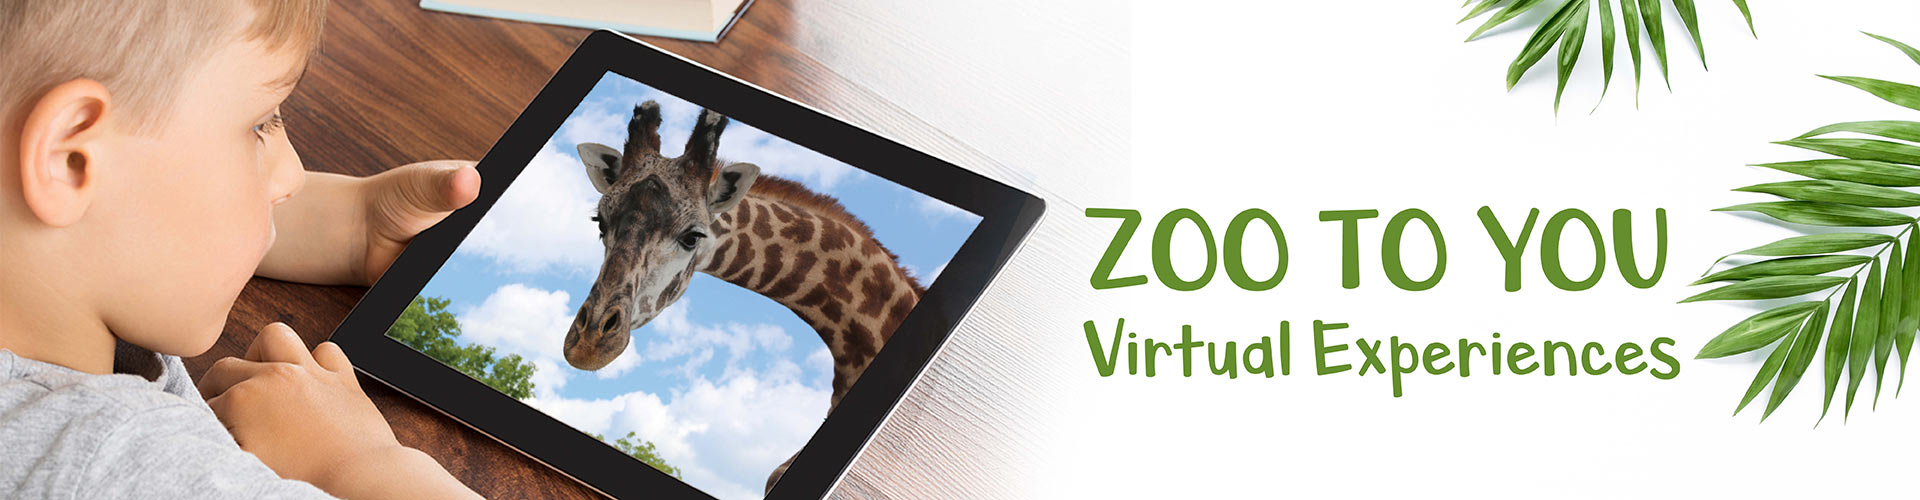 toronto zoo online tour